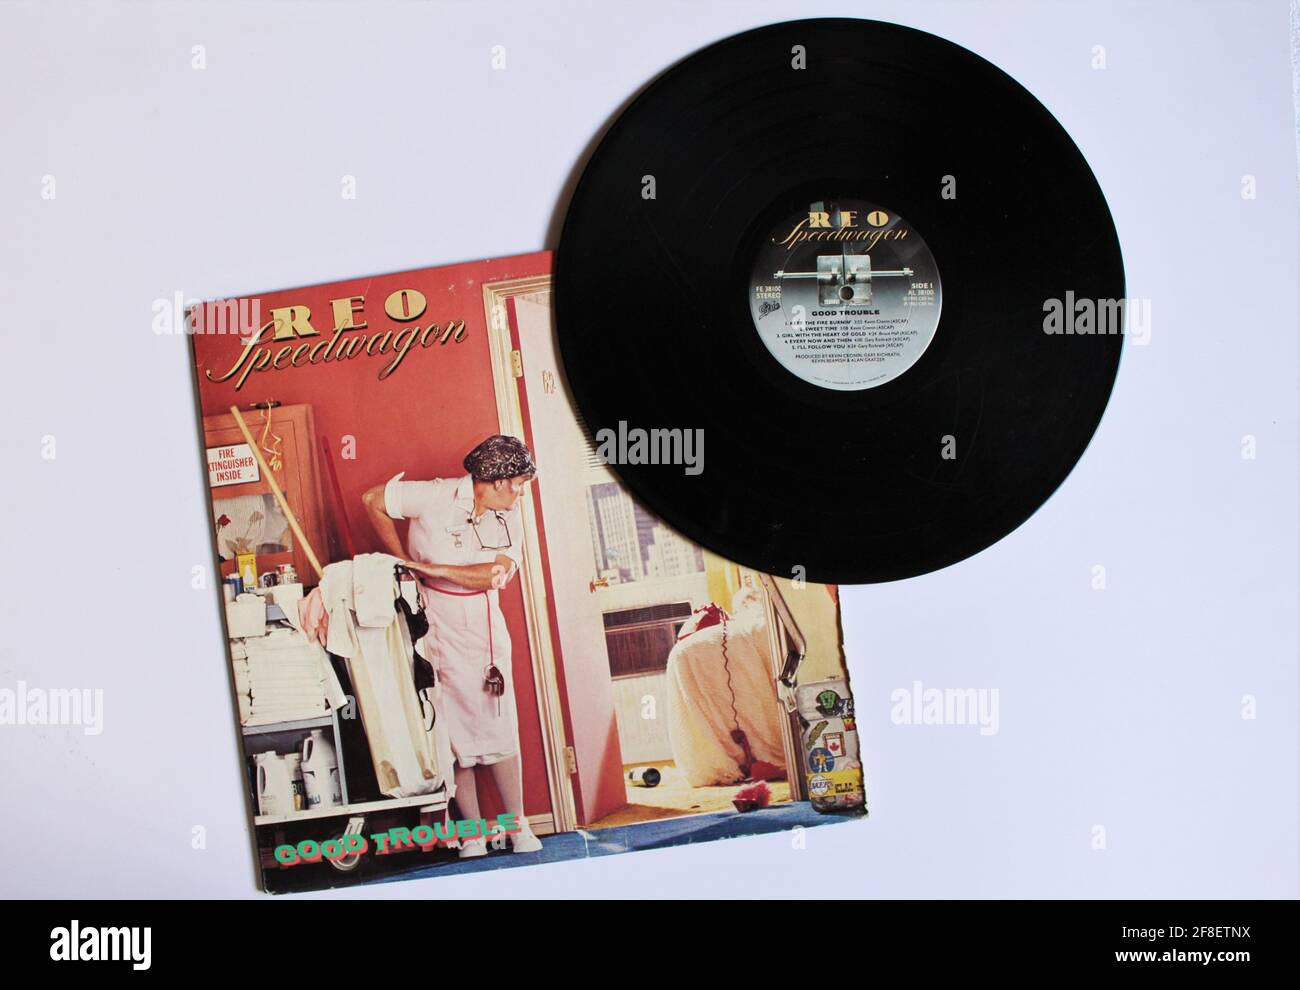 Rock- und Pop-Rockband, REO Speedwagon-Musikalbum auf Vinyl-Schallplatte. Titel: Good Trouble Album Cover Stockfoto